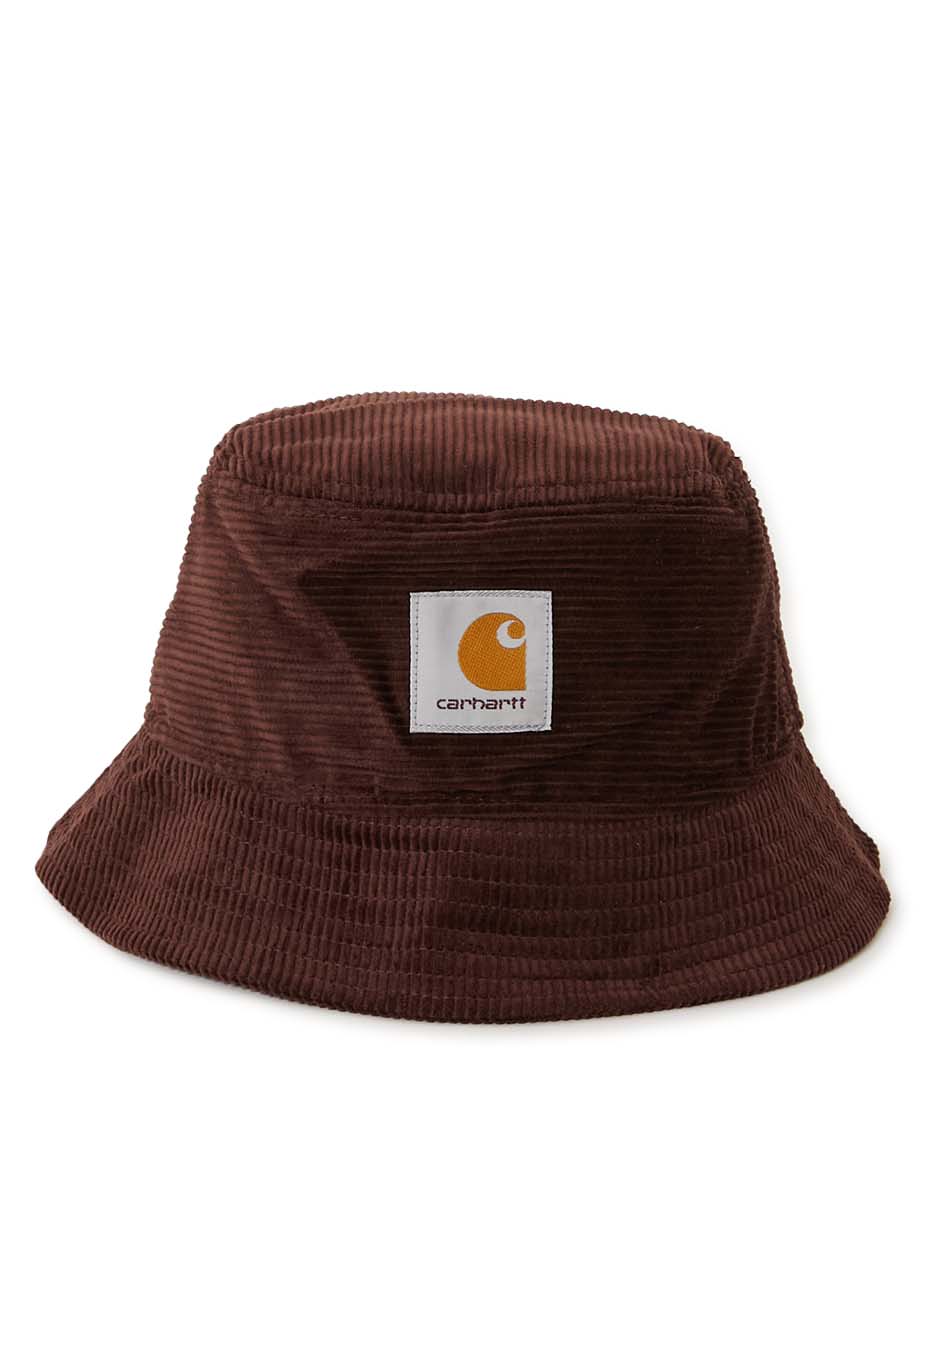 CARHARTT WIP CORDUROY BUCKET HAT